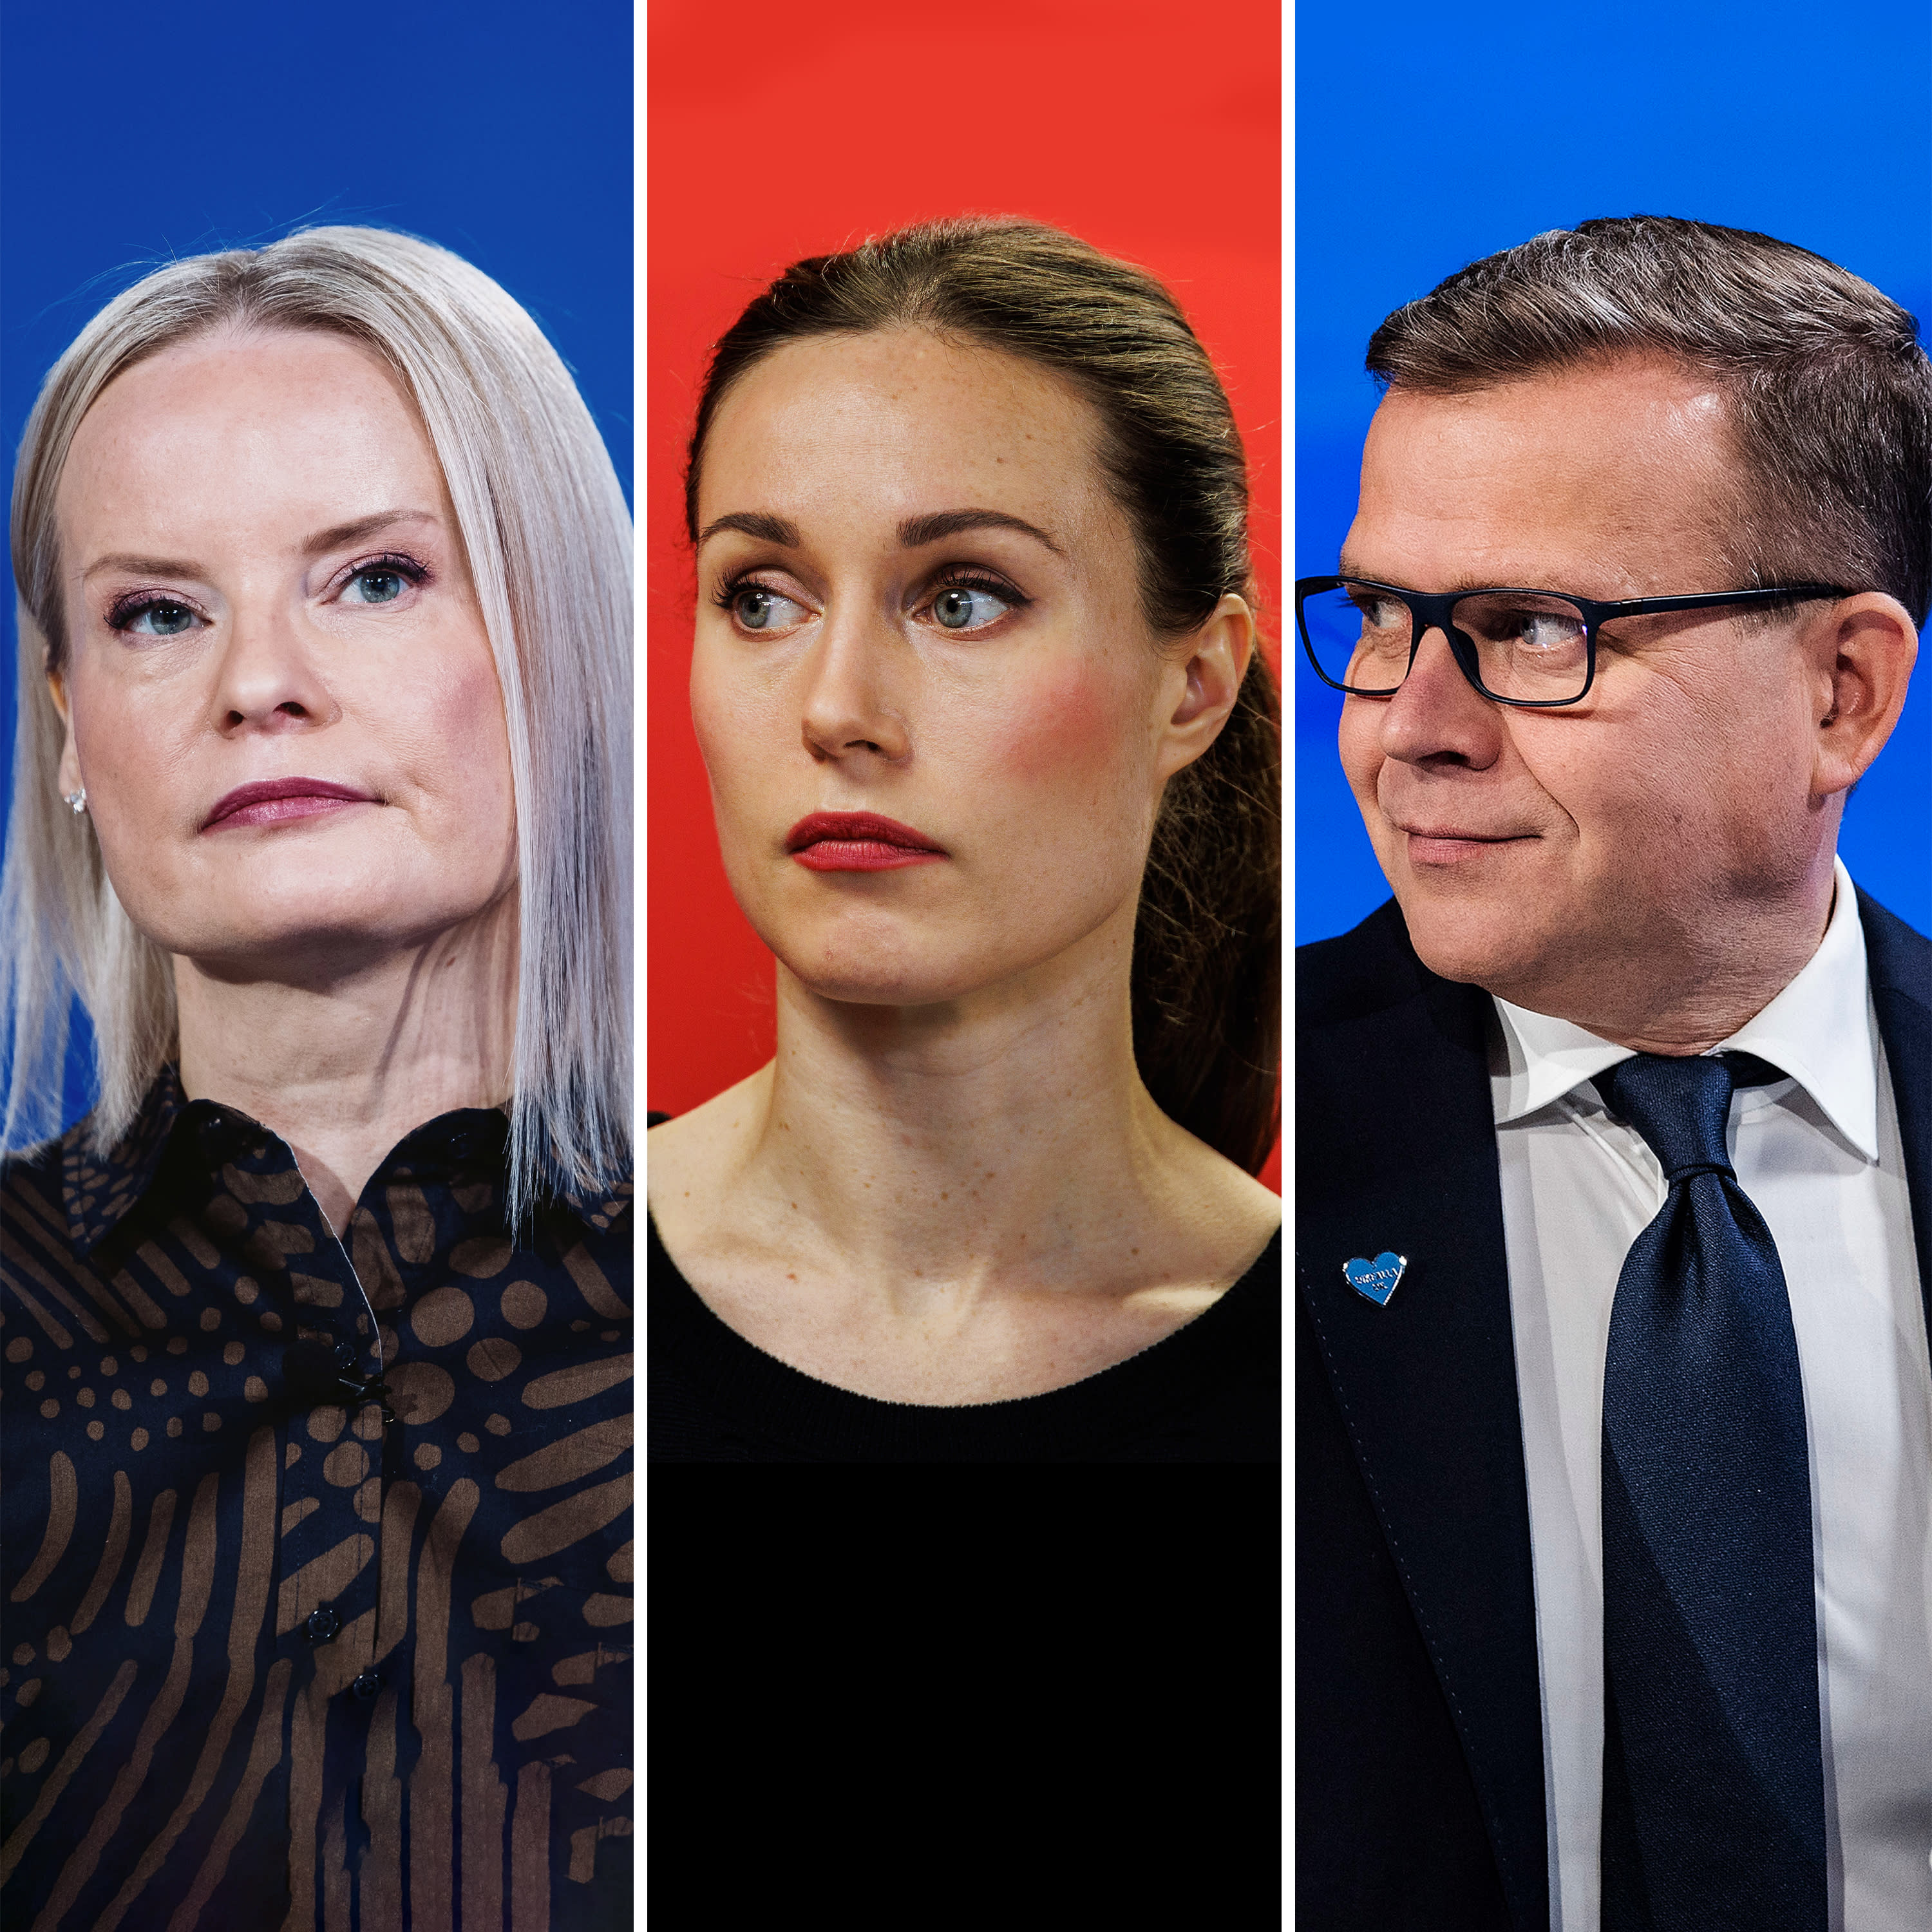 Yle-Umfrage: NCP, SDP und Perussuomalaiset teilen sich die Führung vor den Wahlen im April